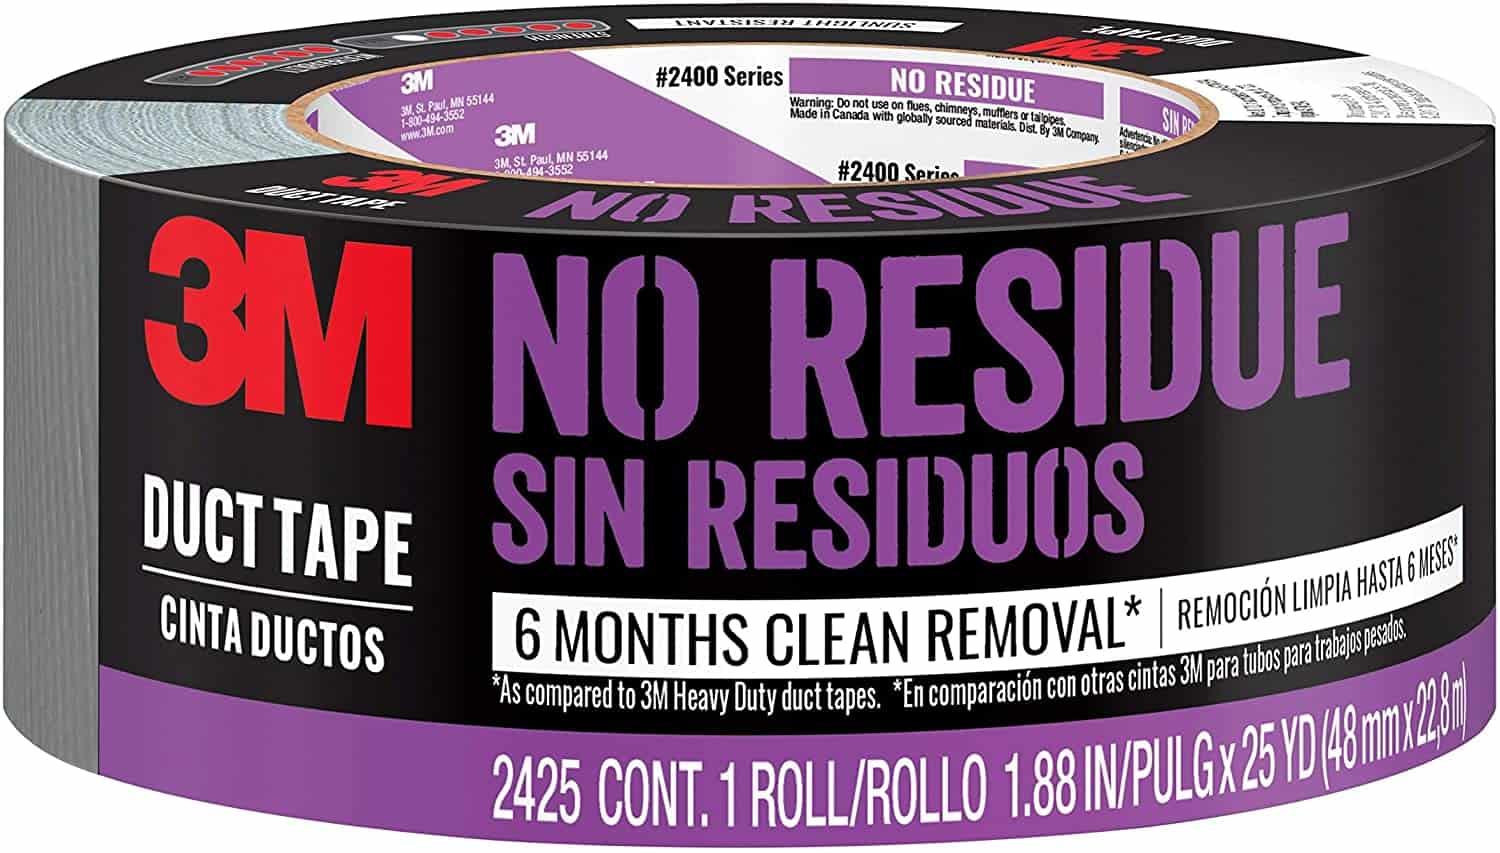 Beste waterdichte tape voor eenvoudige verwijdering: 3M No Residue Duct Tape